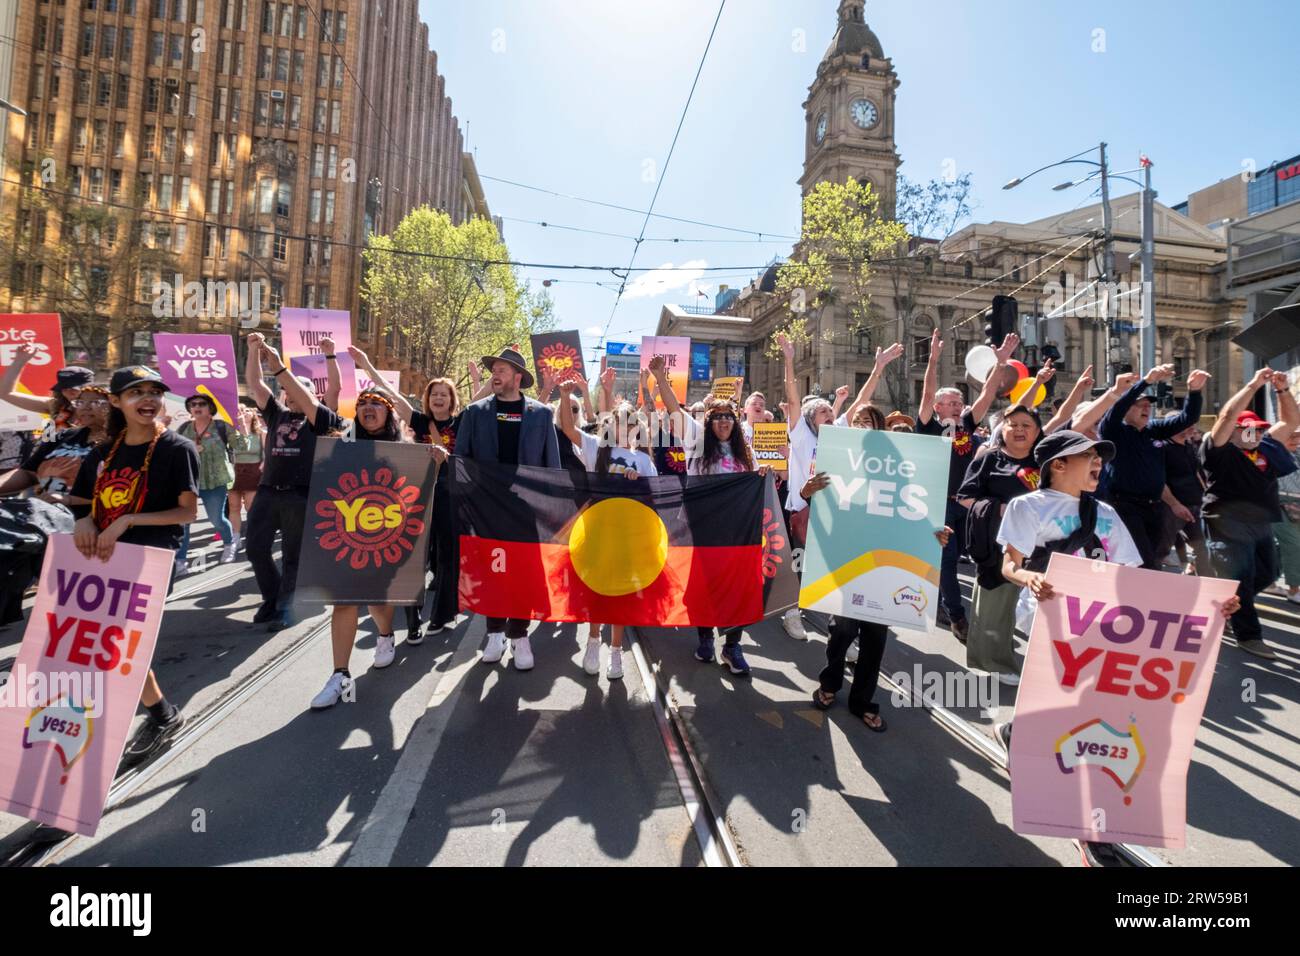 Les manifestants marchent pour soutenir la campagne du Oui lors du référendum australien reconnaissant les Australiens indigènes dans la constitution. Melbourne, Victoria, Australie Banque D'Images